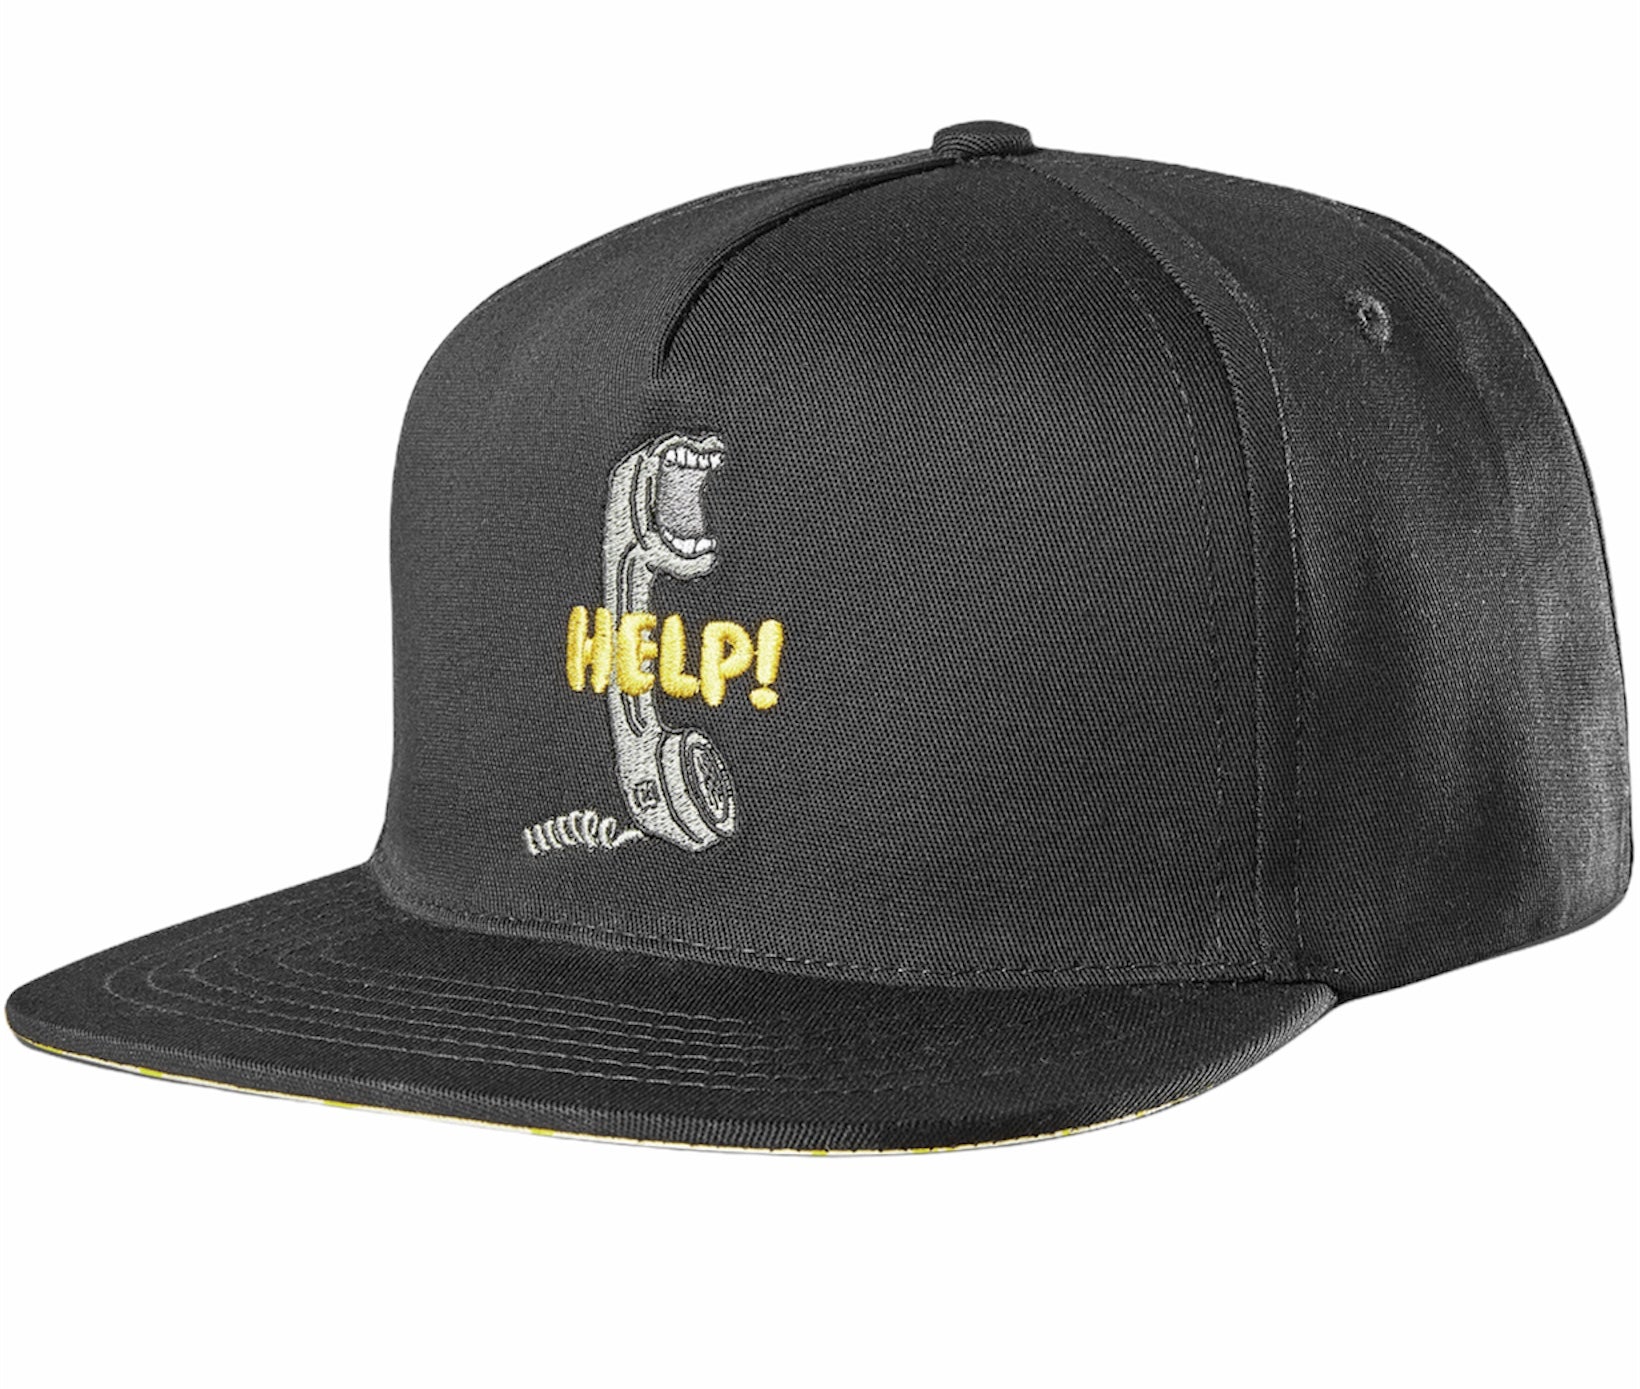 Etnies X Kink Help Snapback Hat